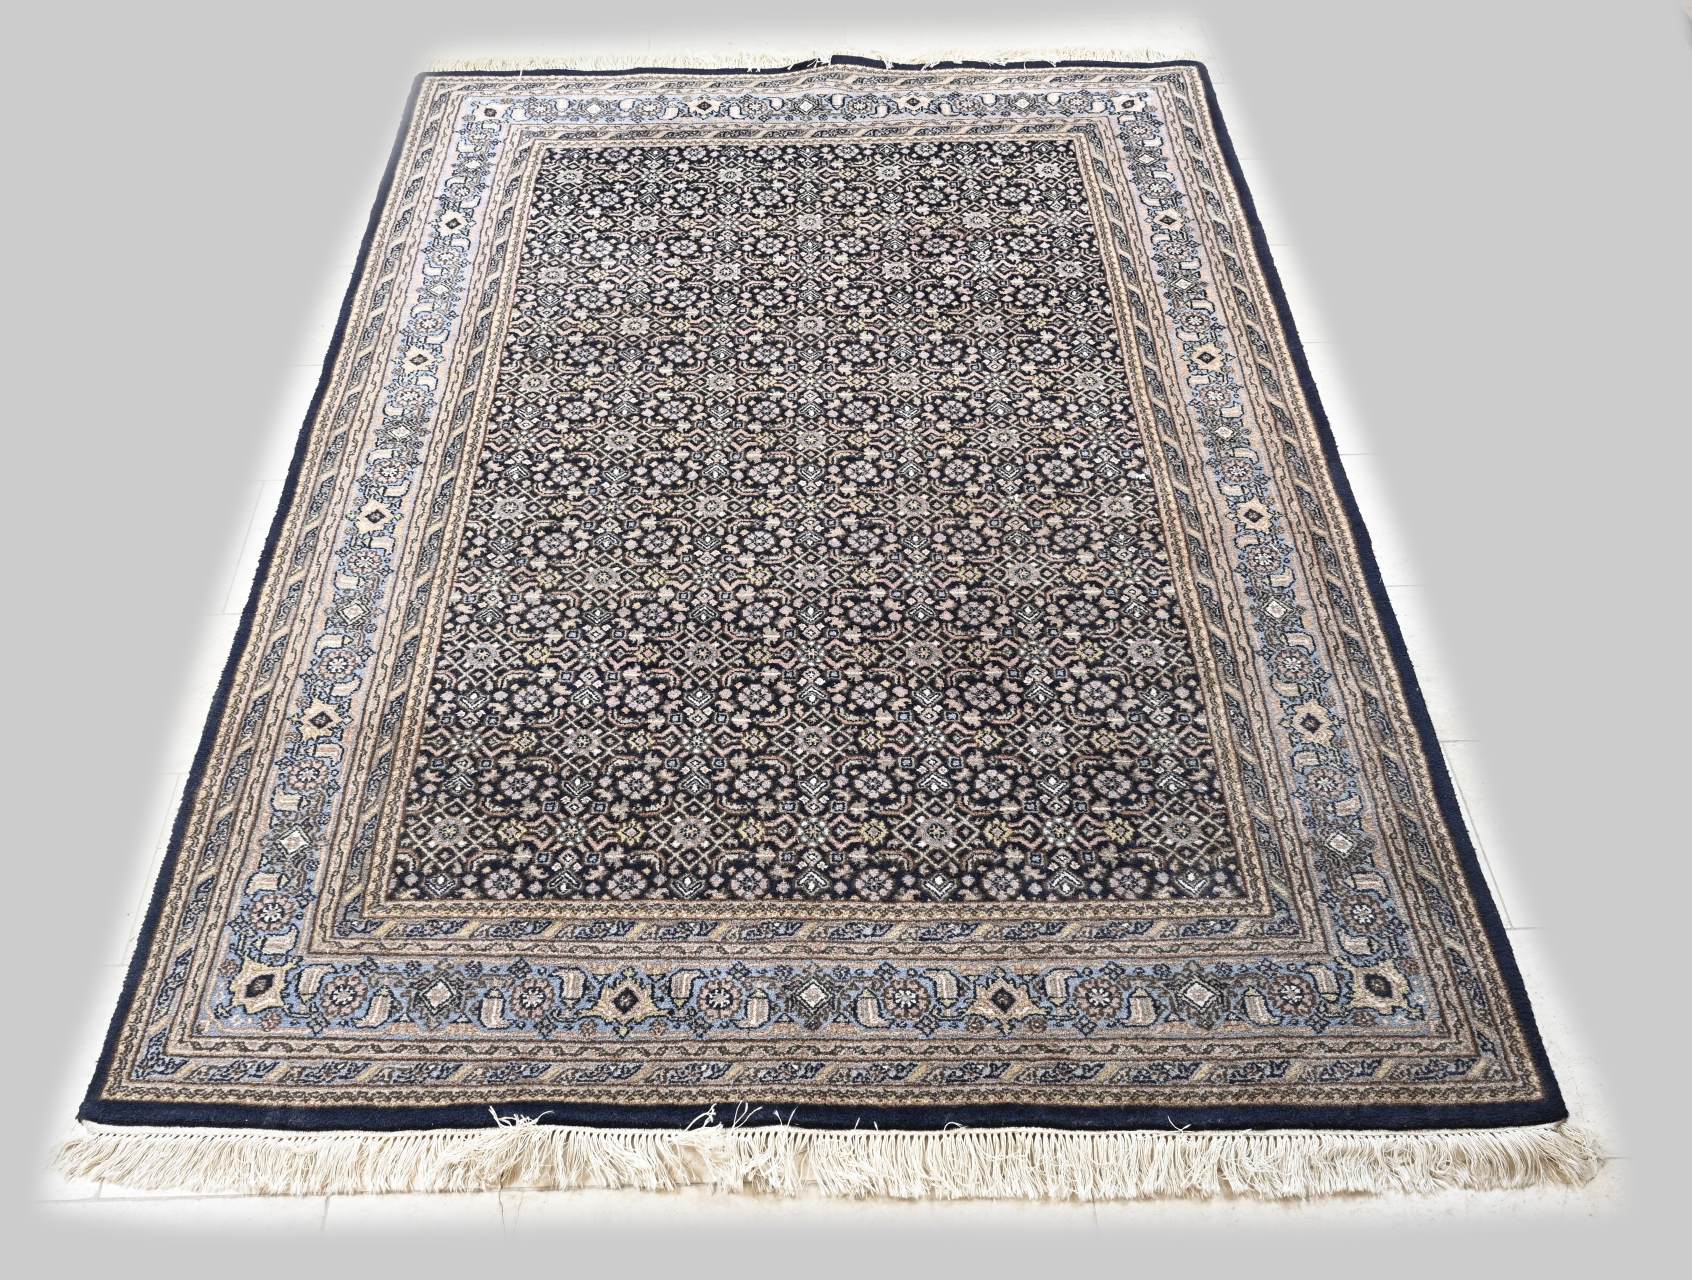 Persian rug, 250 x 171 cm.